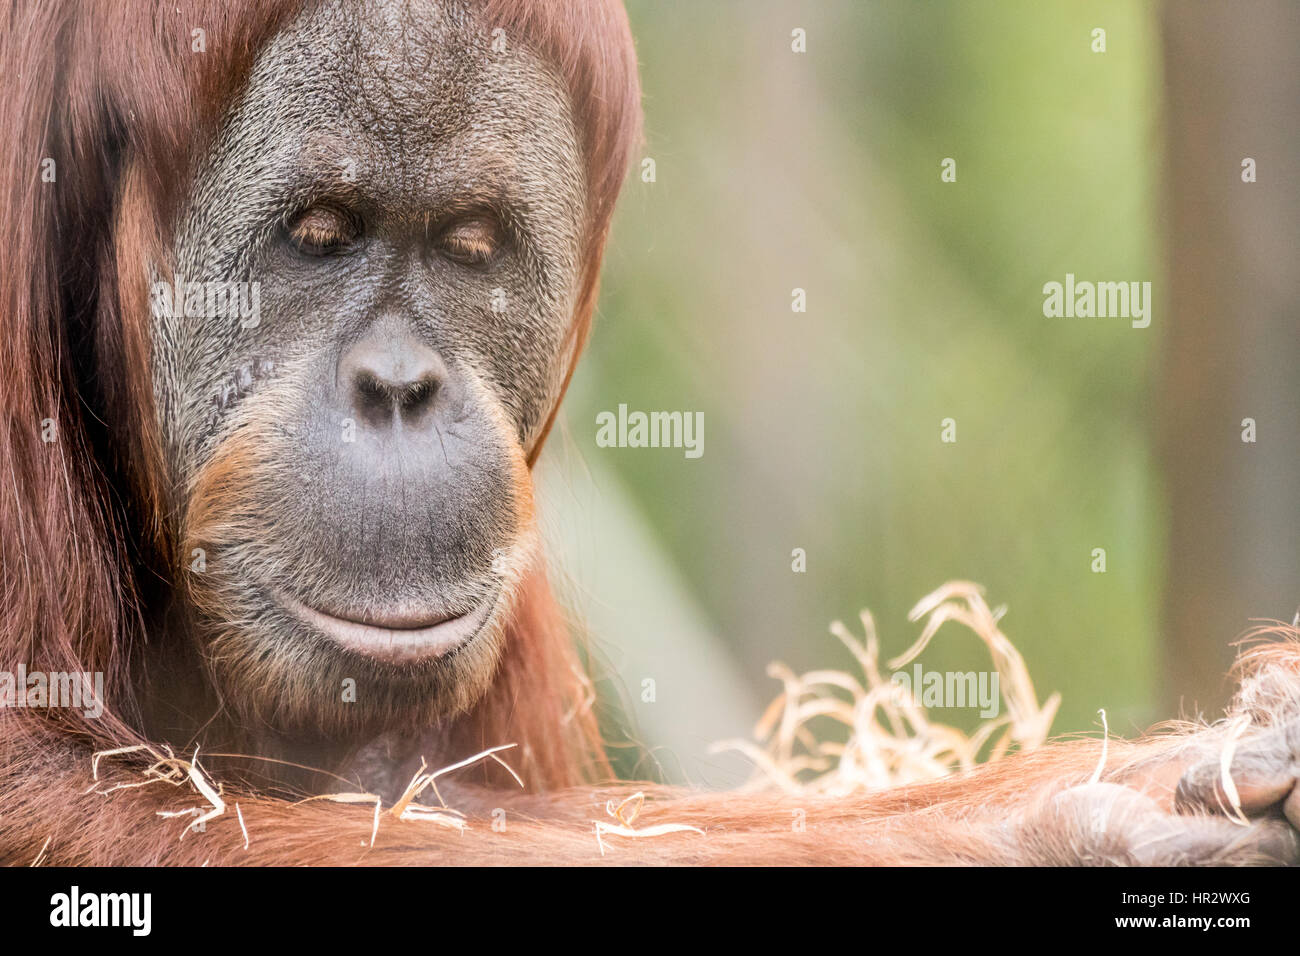 Schließen Sie herauf Bild der Vorderansicht des ein Orang-Utan auf der linken Seite des Rahmens mit textfreiraum auf der rechten Seite des Rahmens. Stockfoto